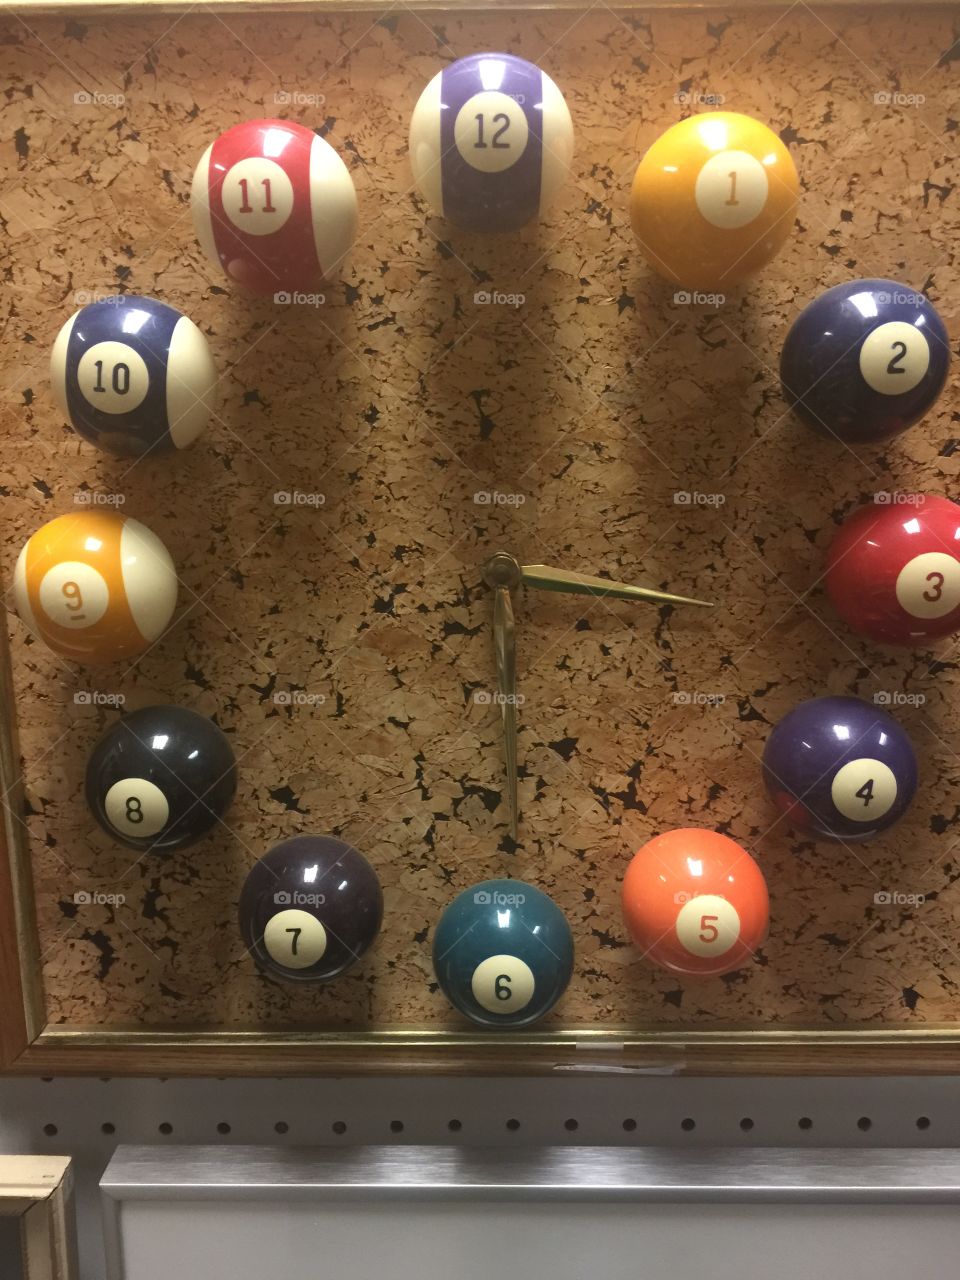 Billiard clock